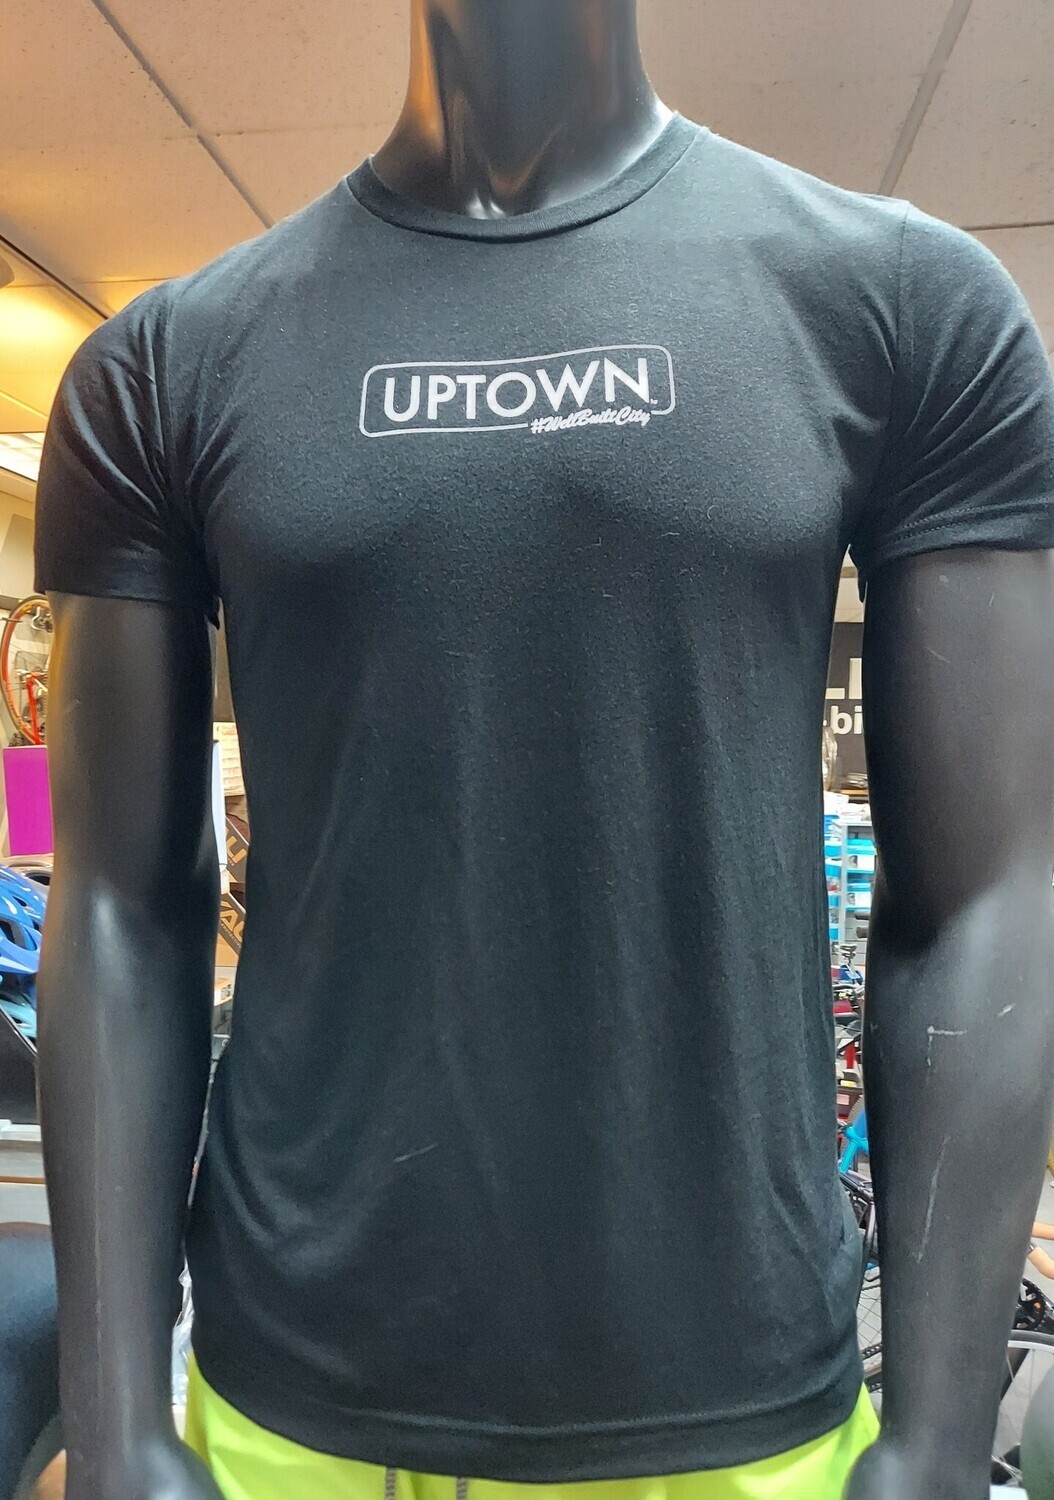 Uptown Tshirts Black